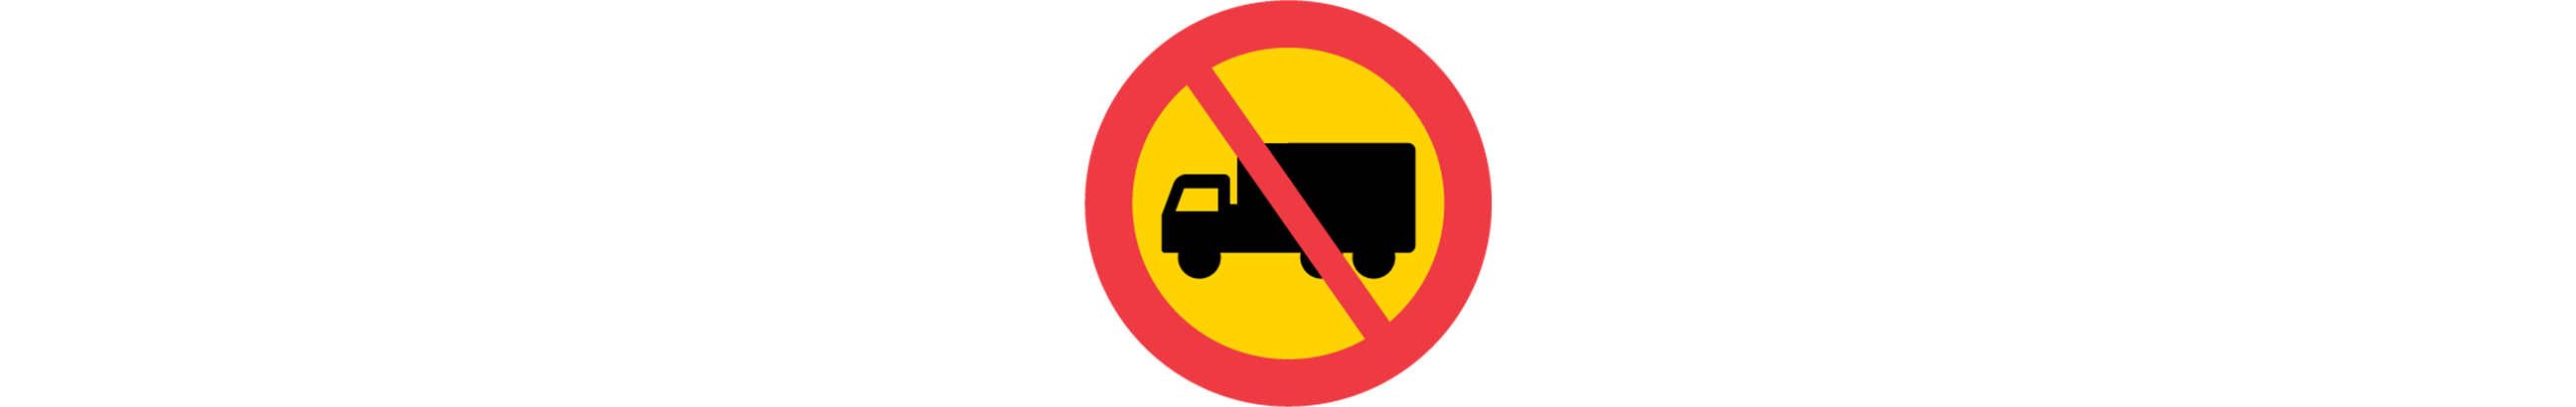 vägmärke för förbud av tung lastbil